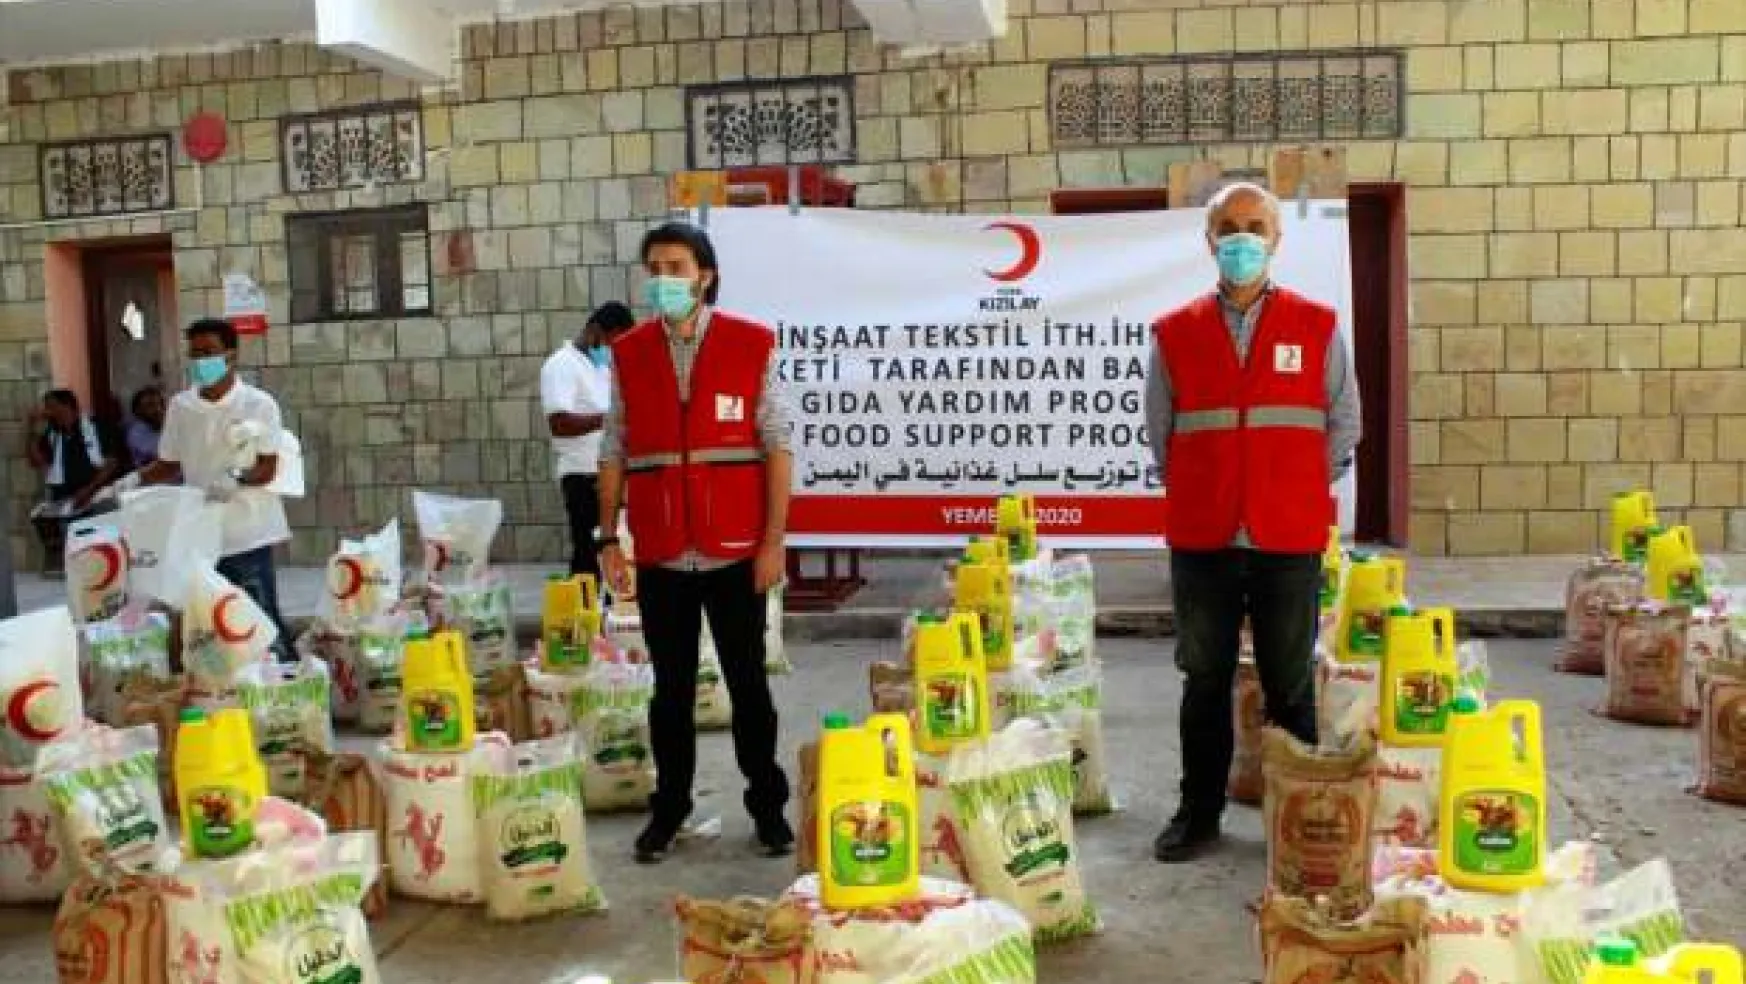 Türk Kızılay'dan Yemen için gıda yardımı kampanyası